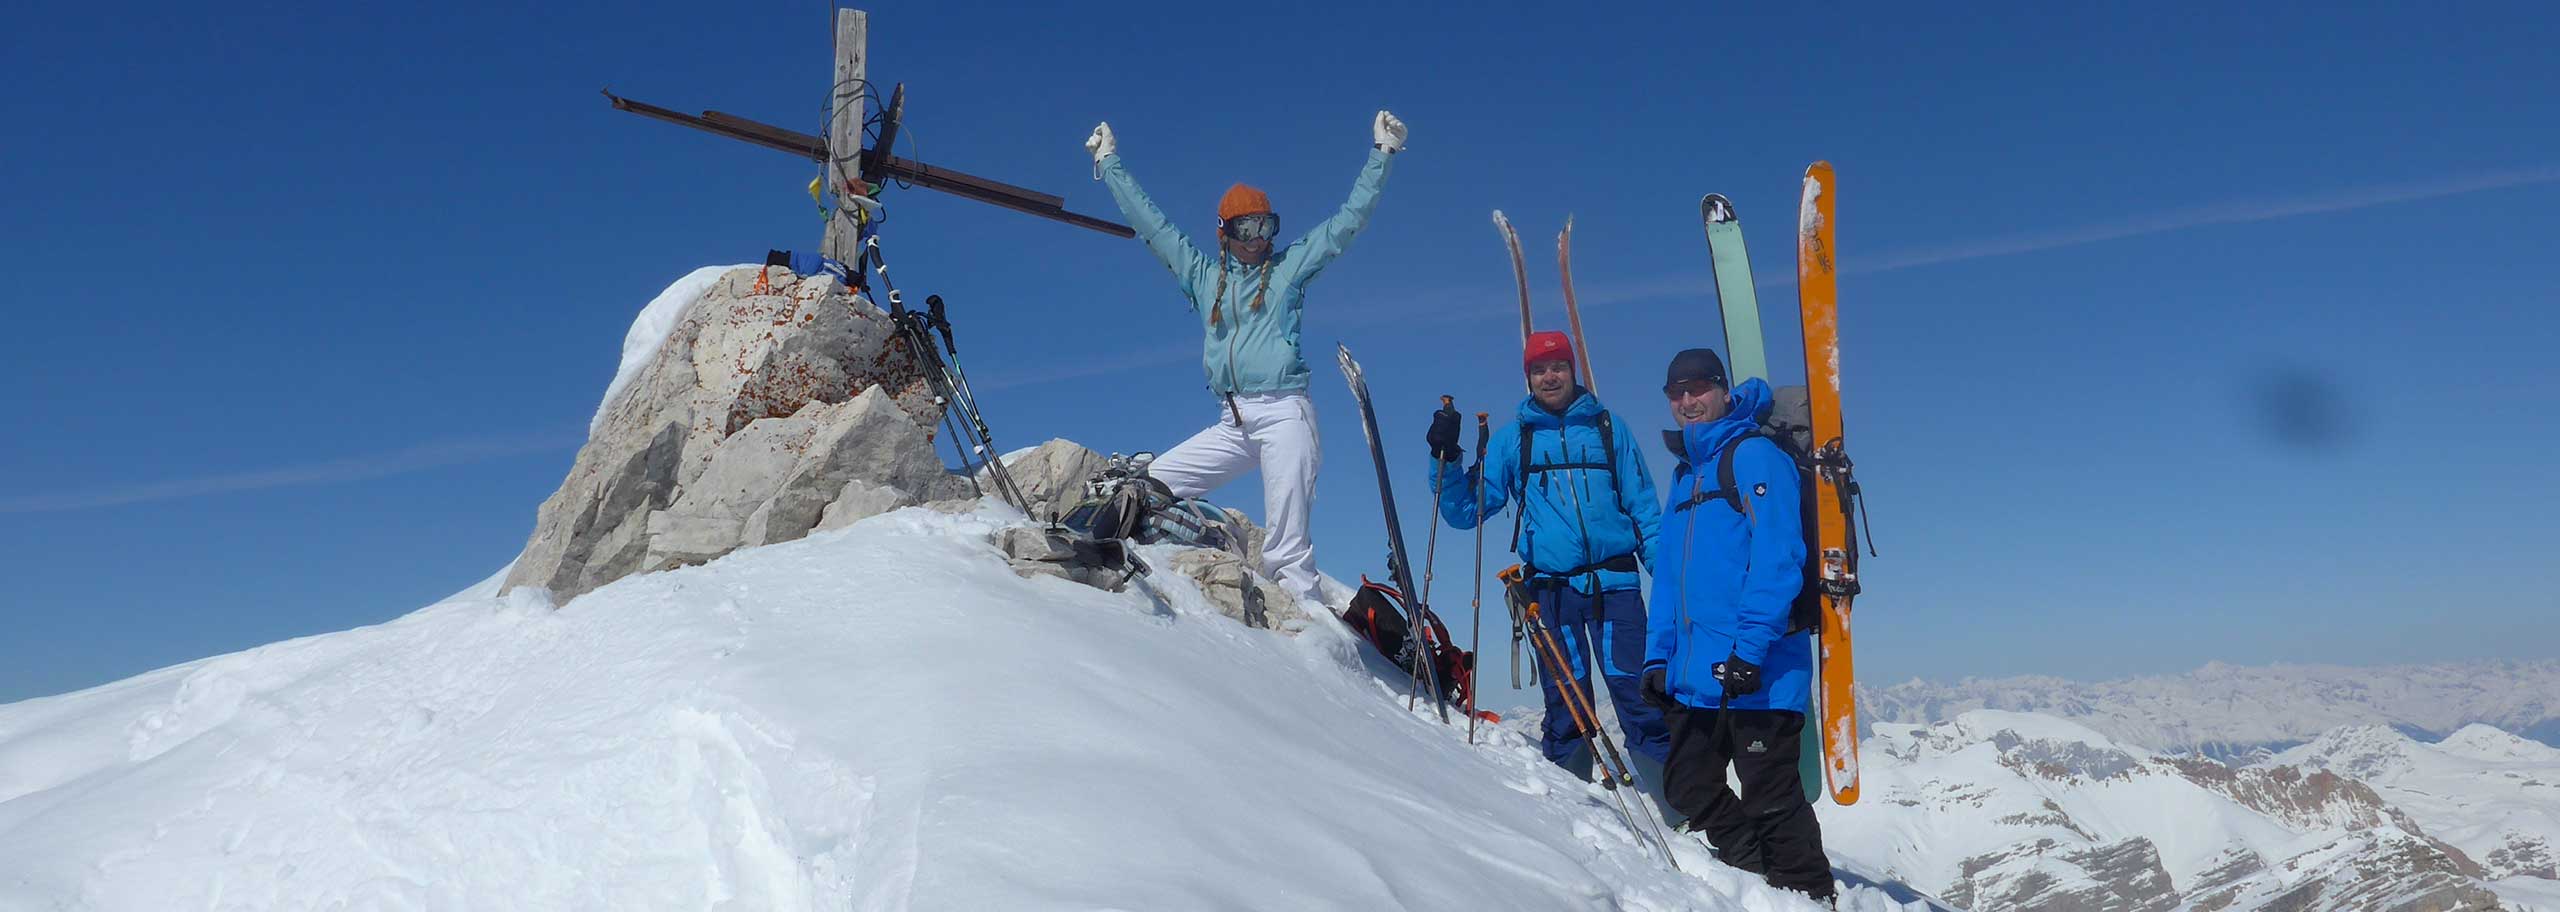 Sci Alpinismo in Val Gardena, Escursioni e Corsi Sci Alpinistici